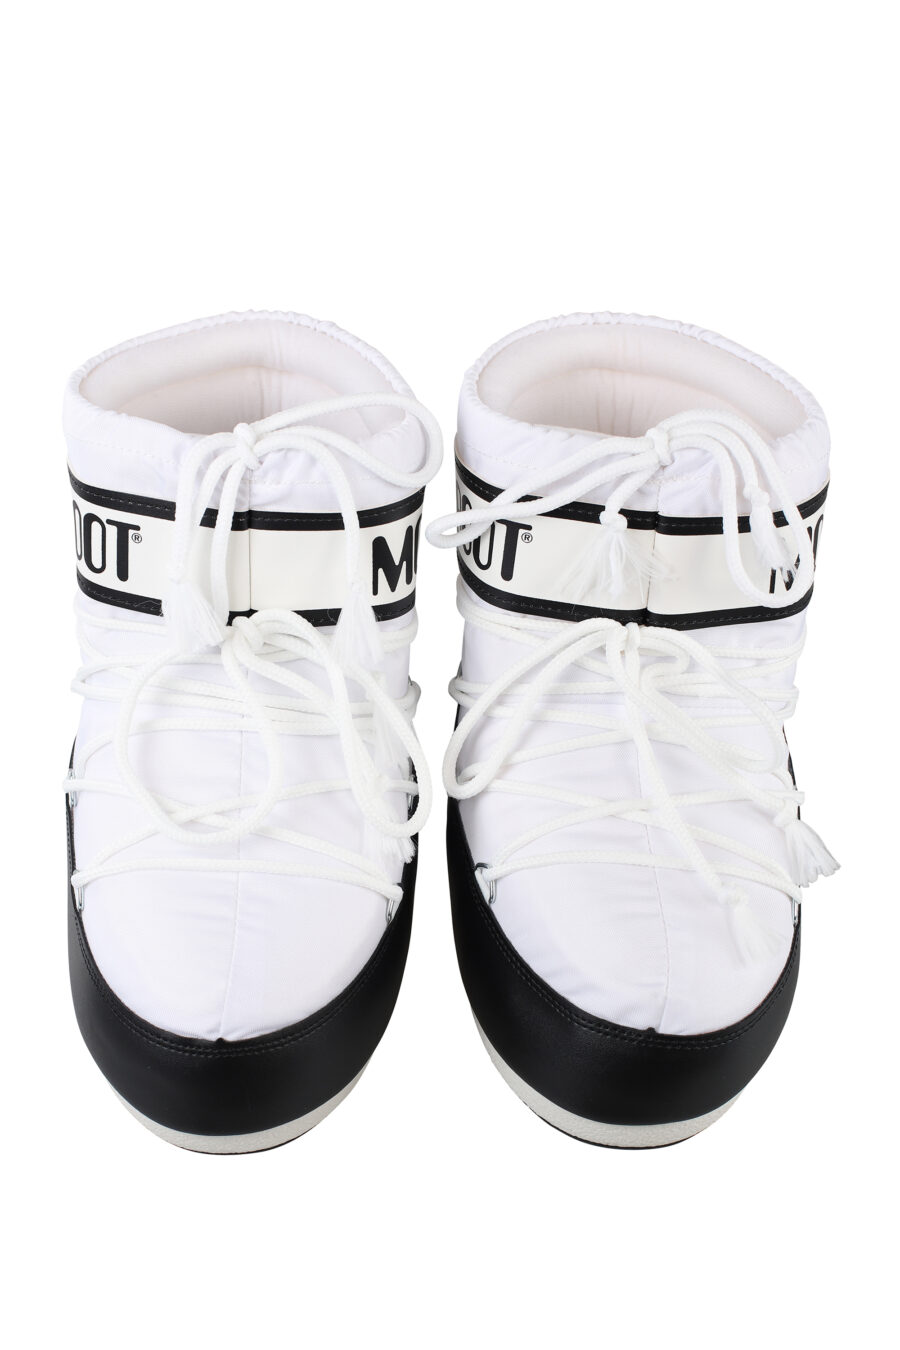 Botines de nieve bicolor blancos y negros con logo negro - IMG 6703